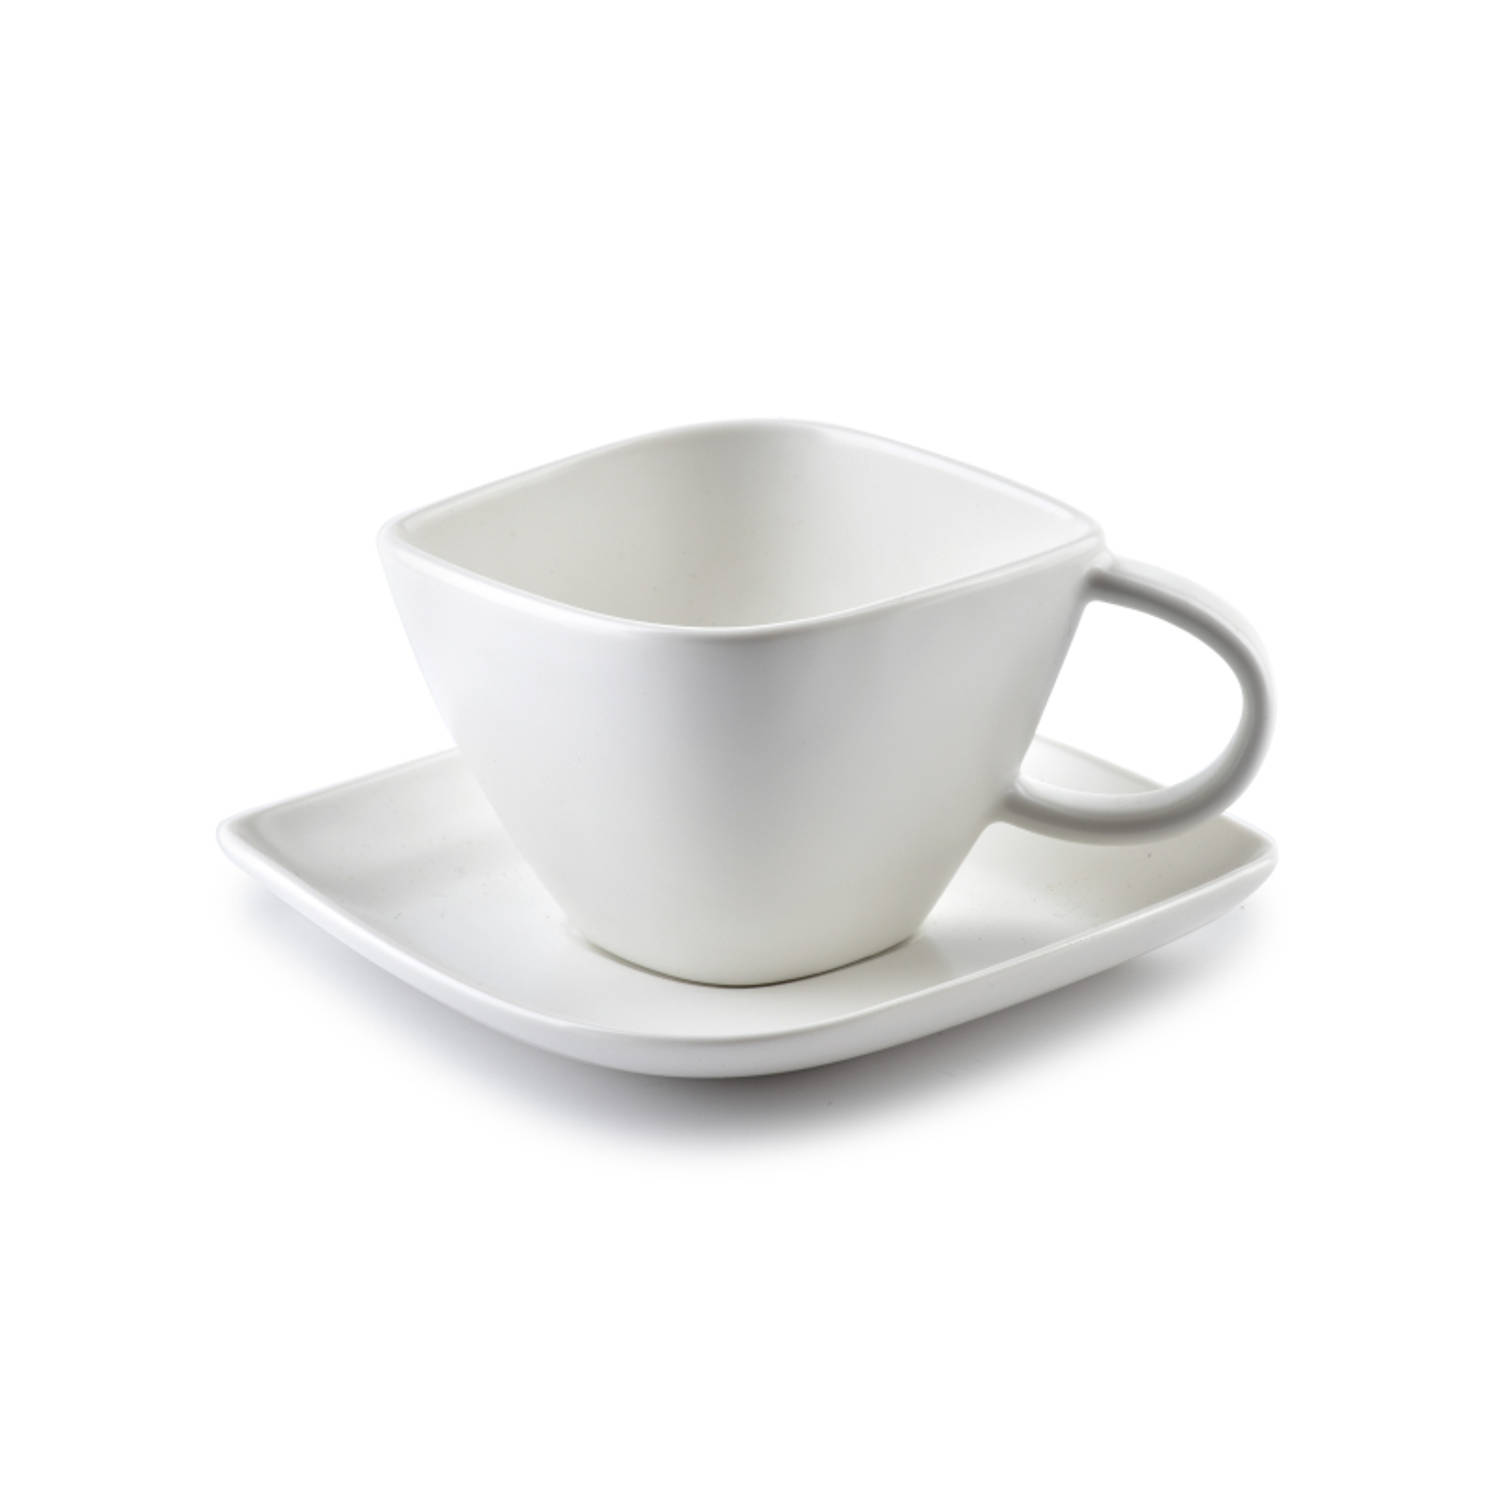 Affekdesign Happy espresso kop met schotel diamant vormig 100 ml wit - Koffiekopje of theekopje met schotel - Matte witte kleur - 100ml